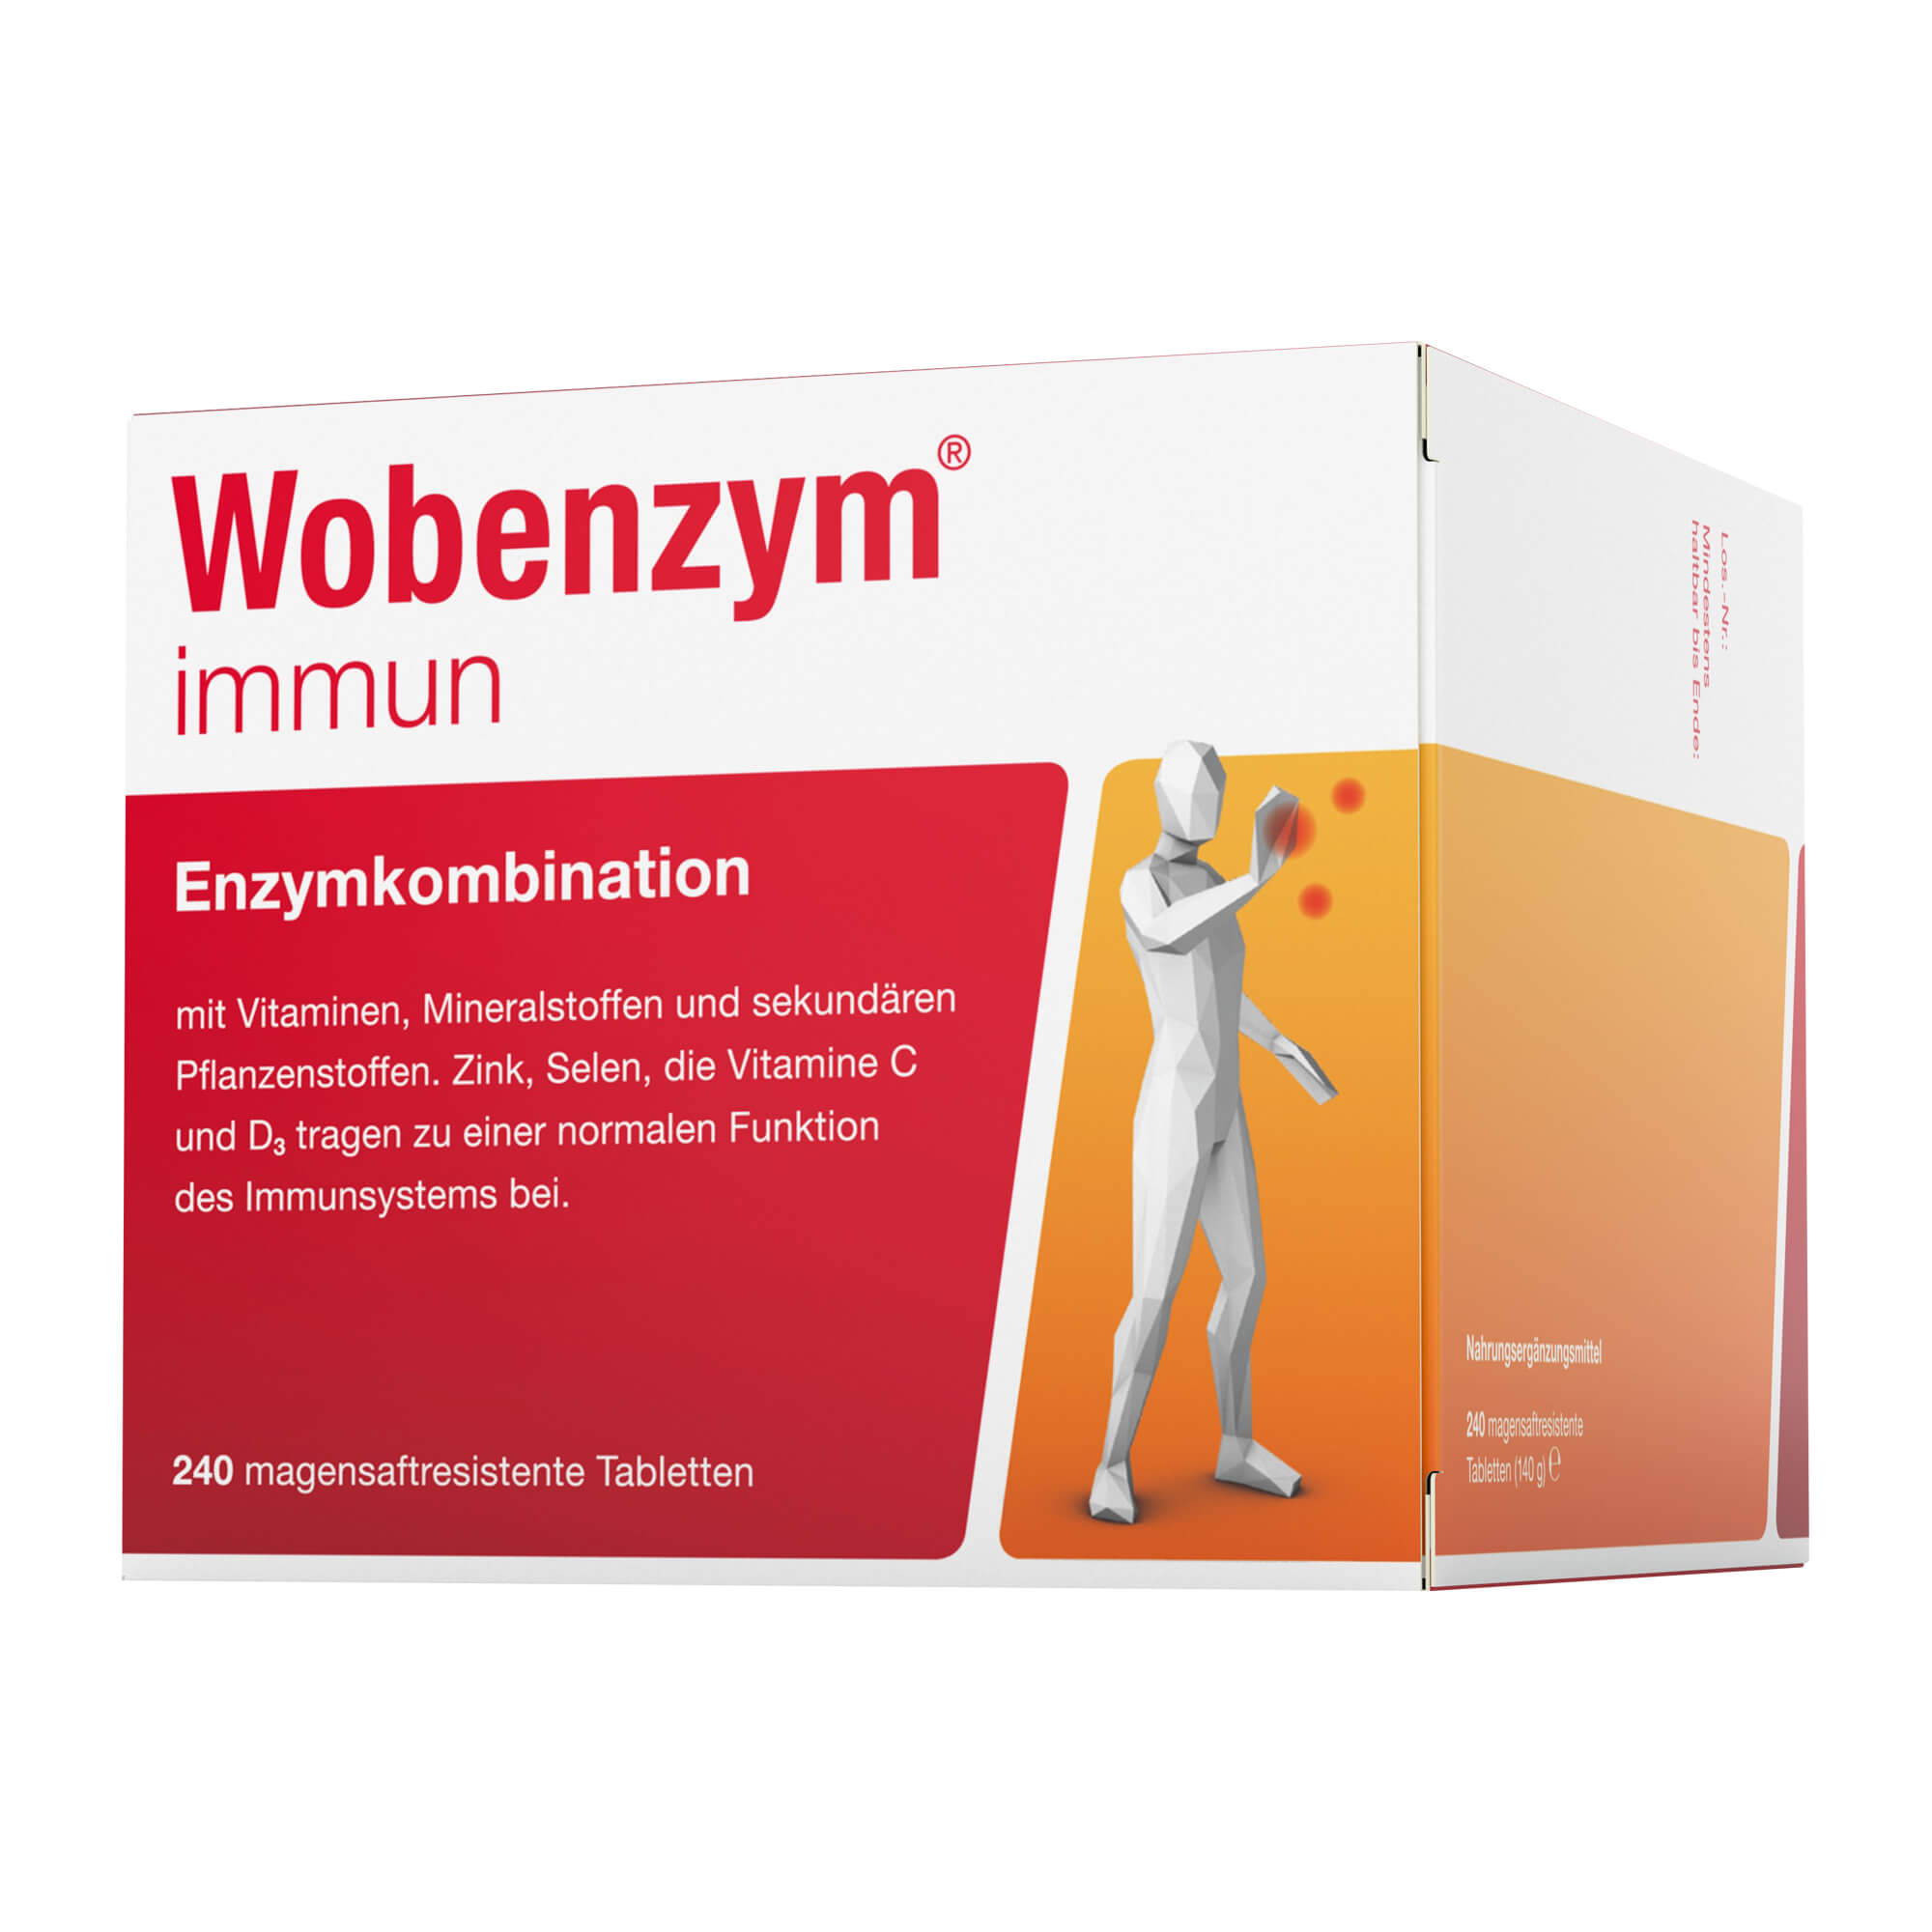 Enzymkombination mit Vitaminen, Mineralstoffen und sekundären Pflanzenstoffen für Immunfunktion und Zellschutz.